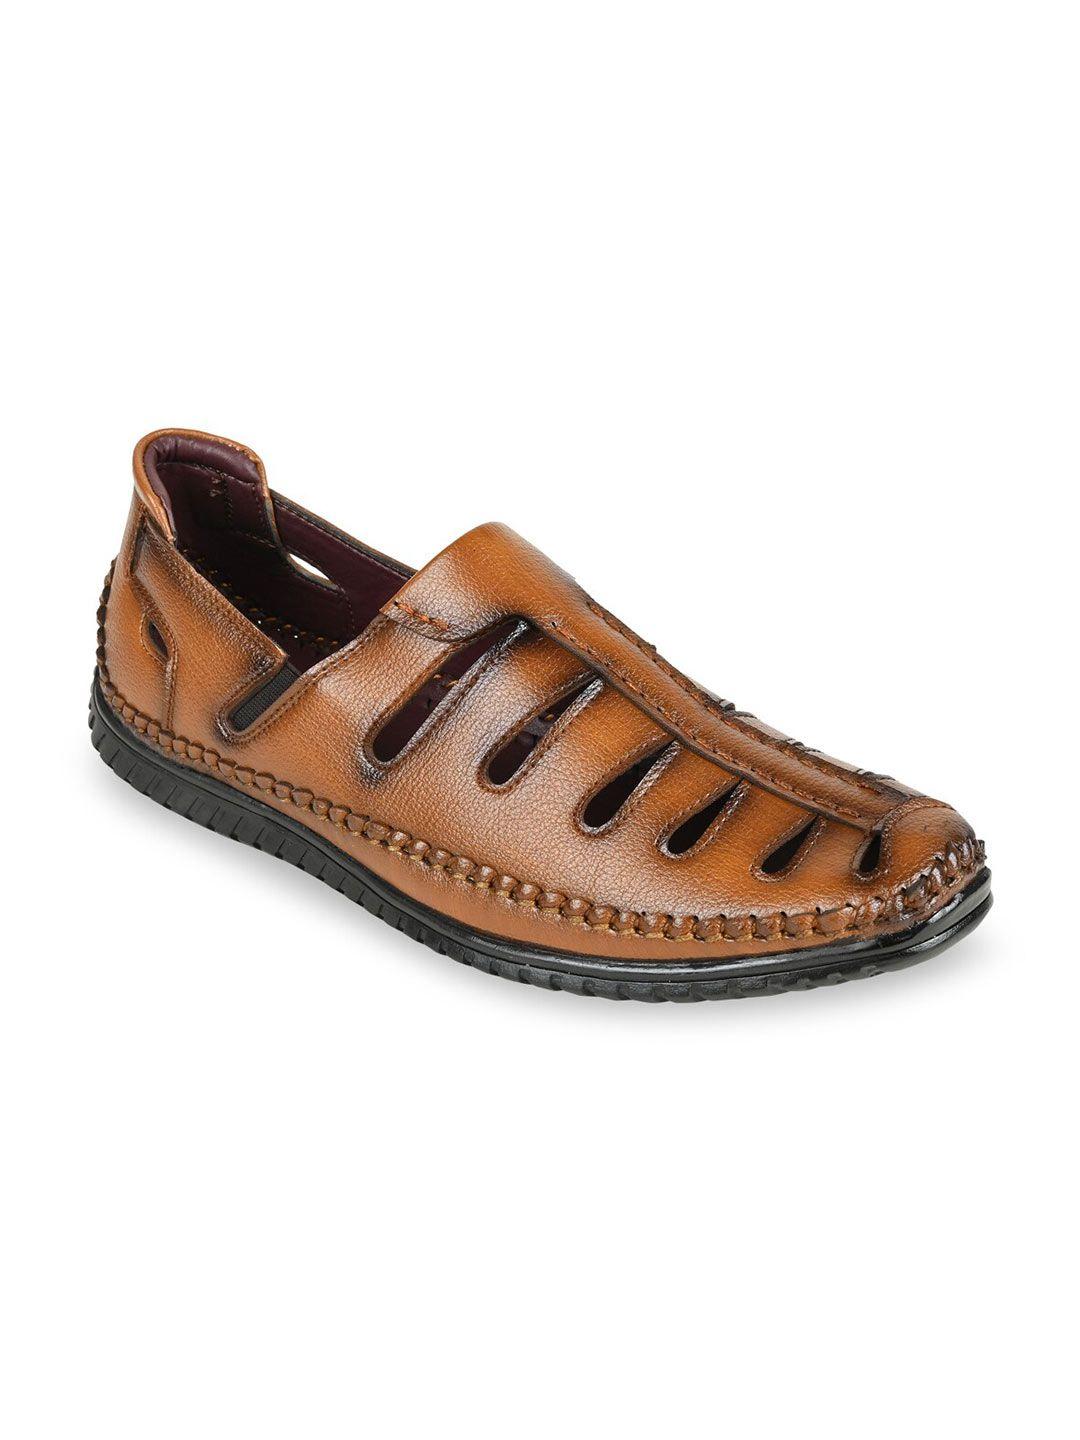 regal-men-brown-fisherman-sandals